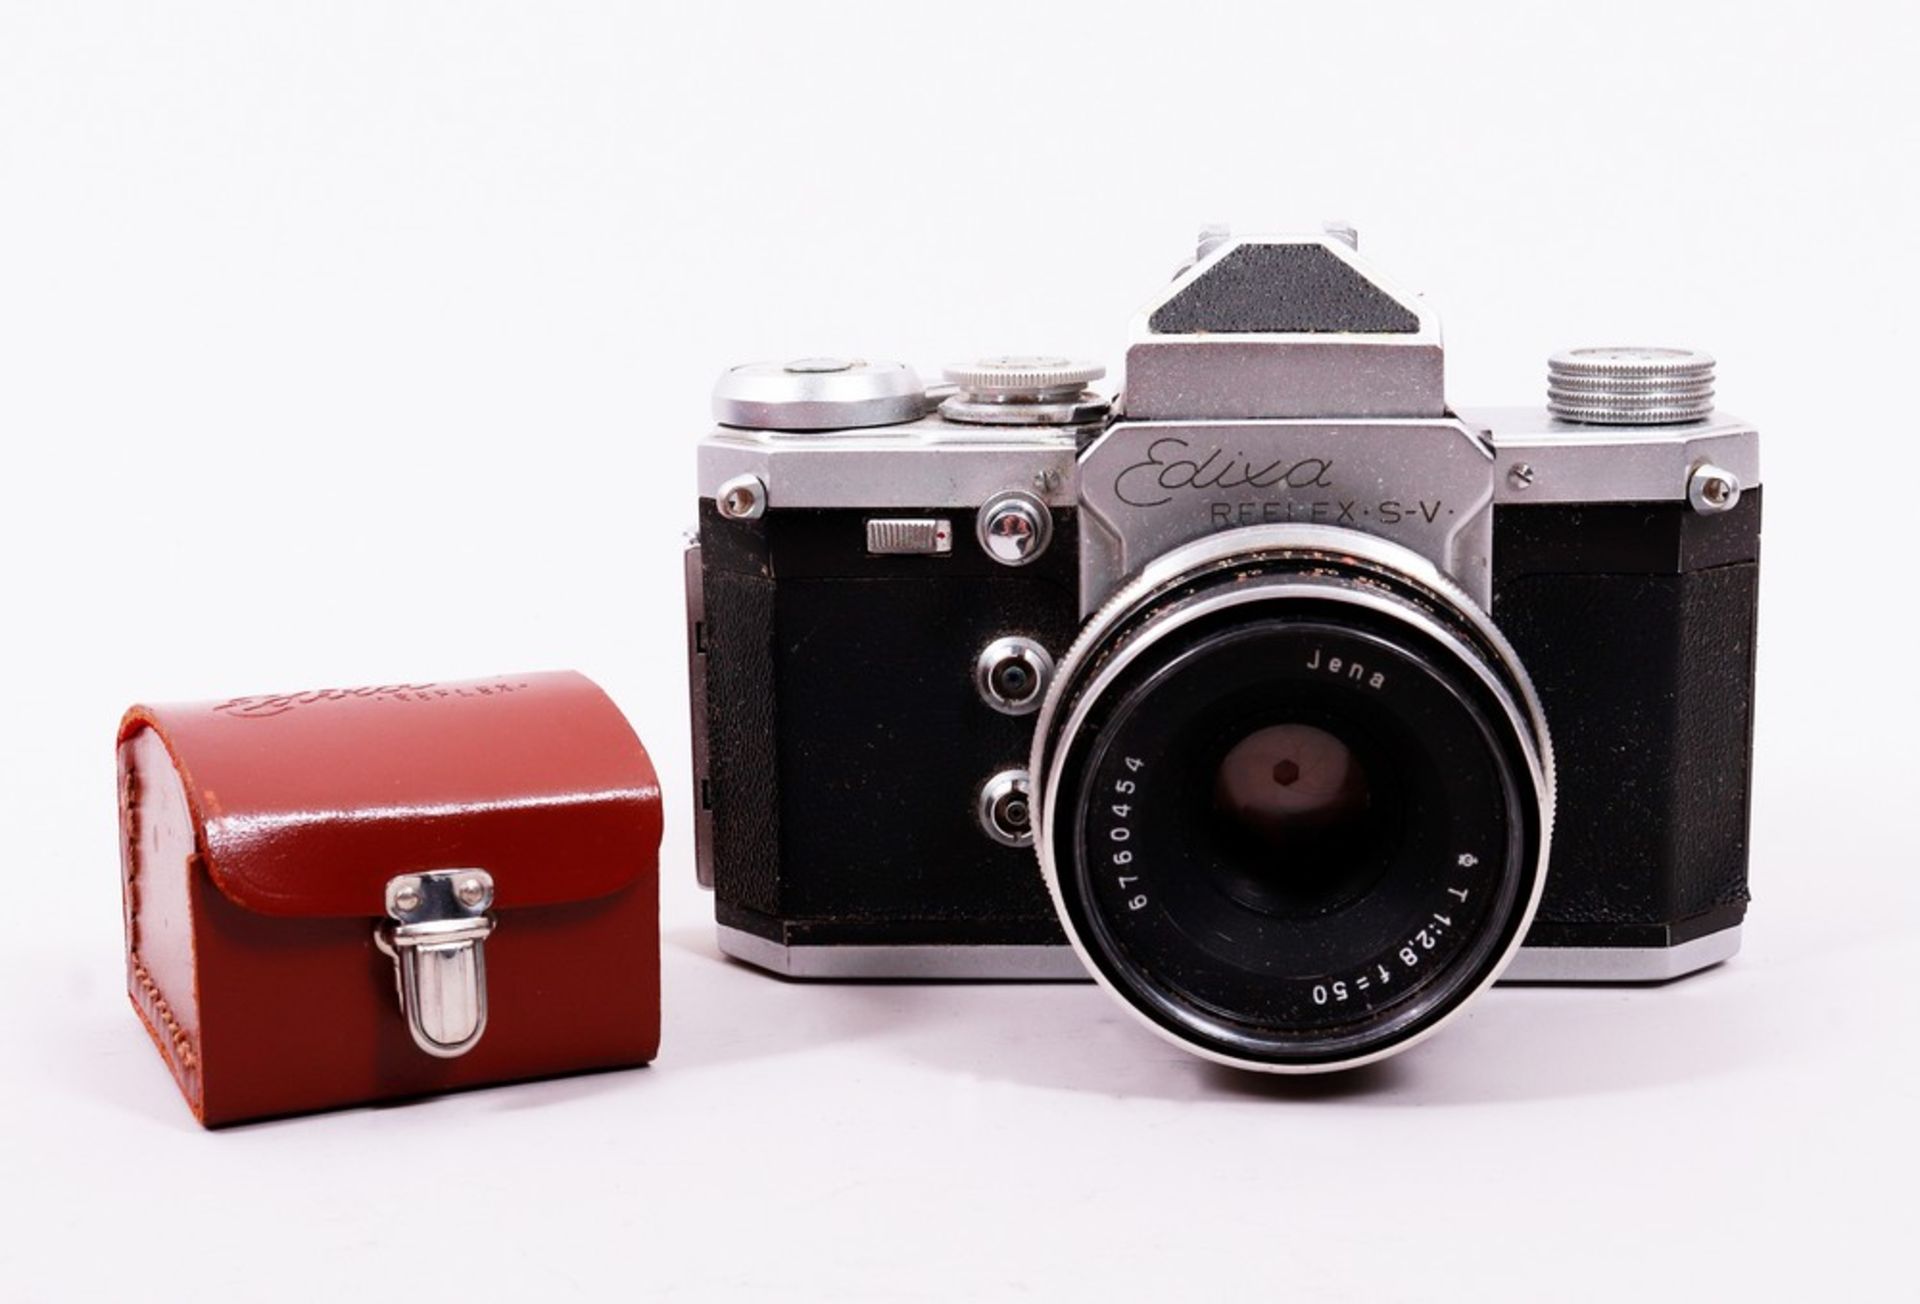 Kamera "Edixa Reflex", Hersteller Wirgin, um 1960